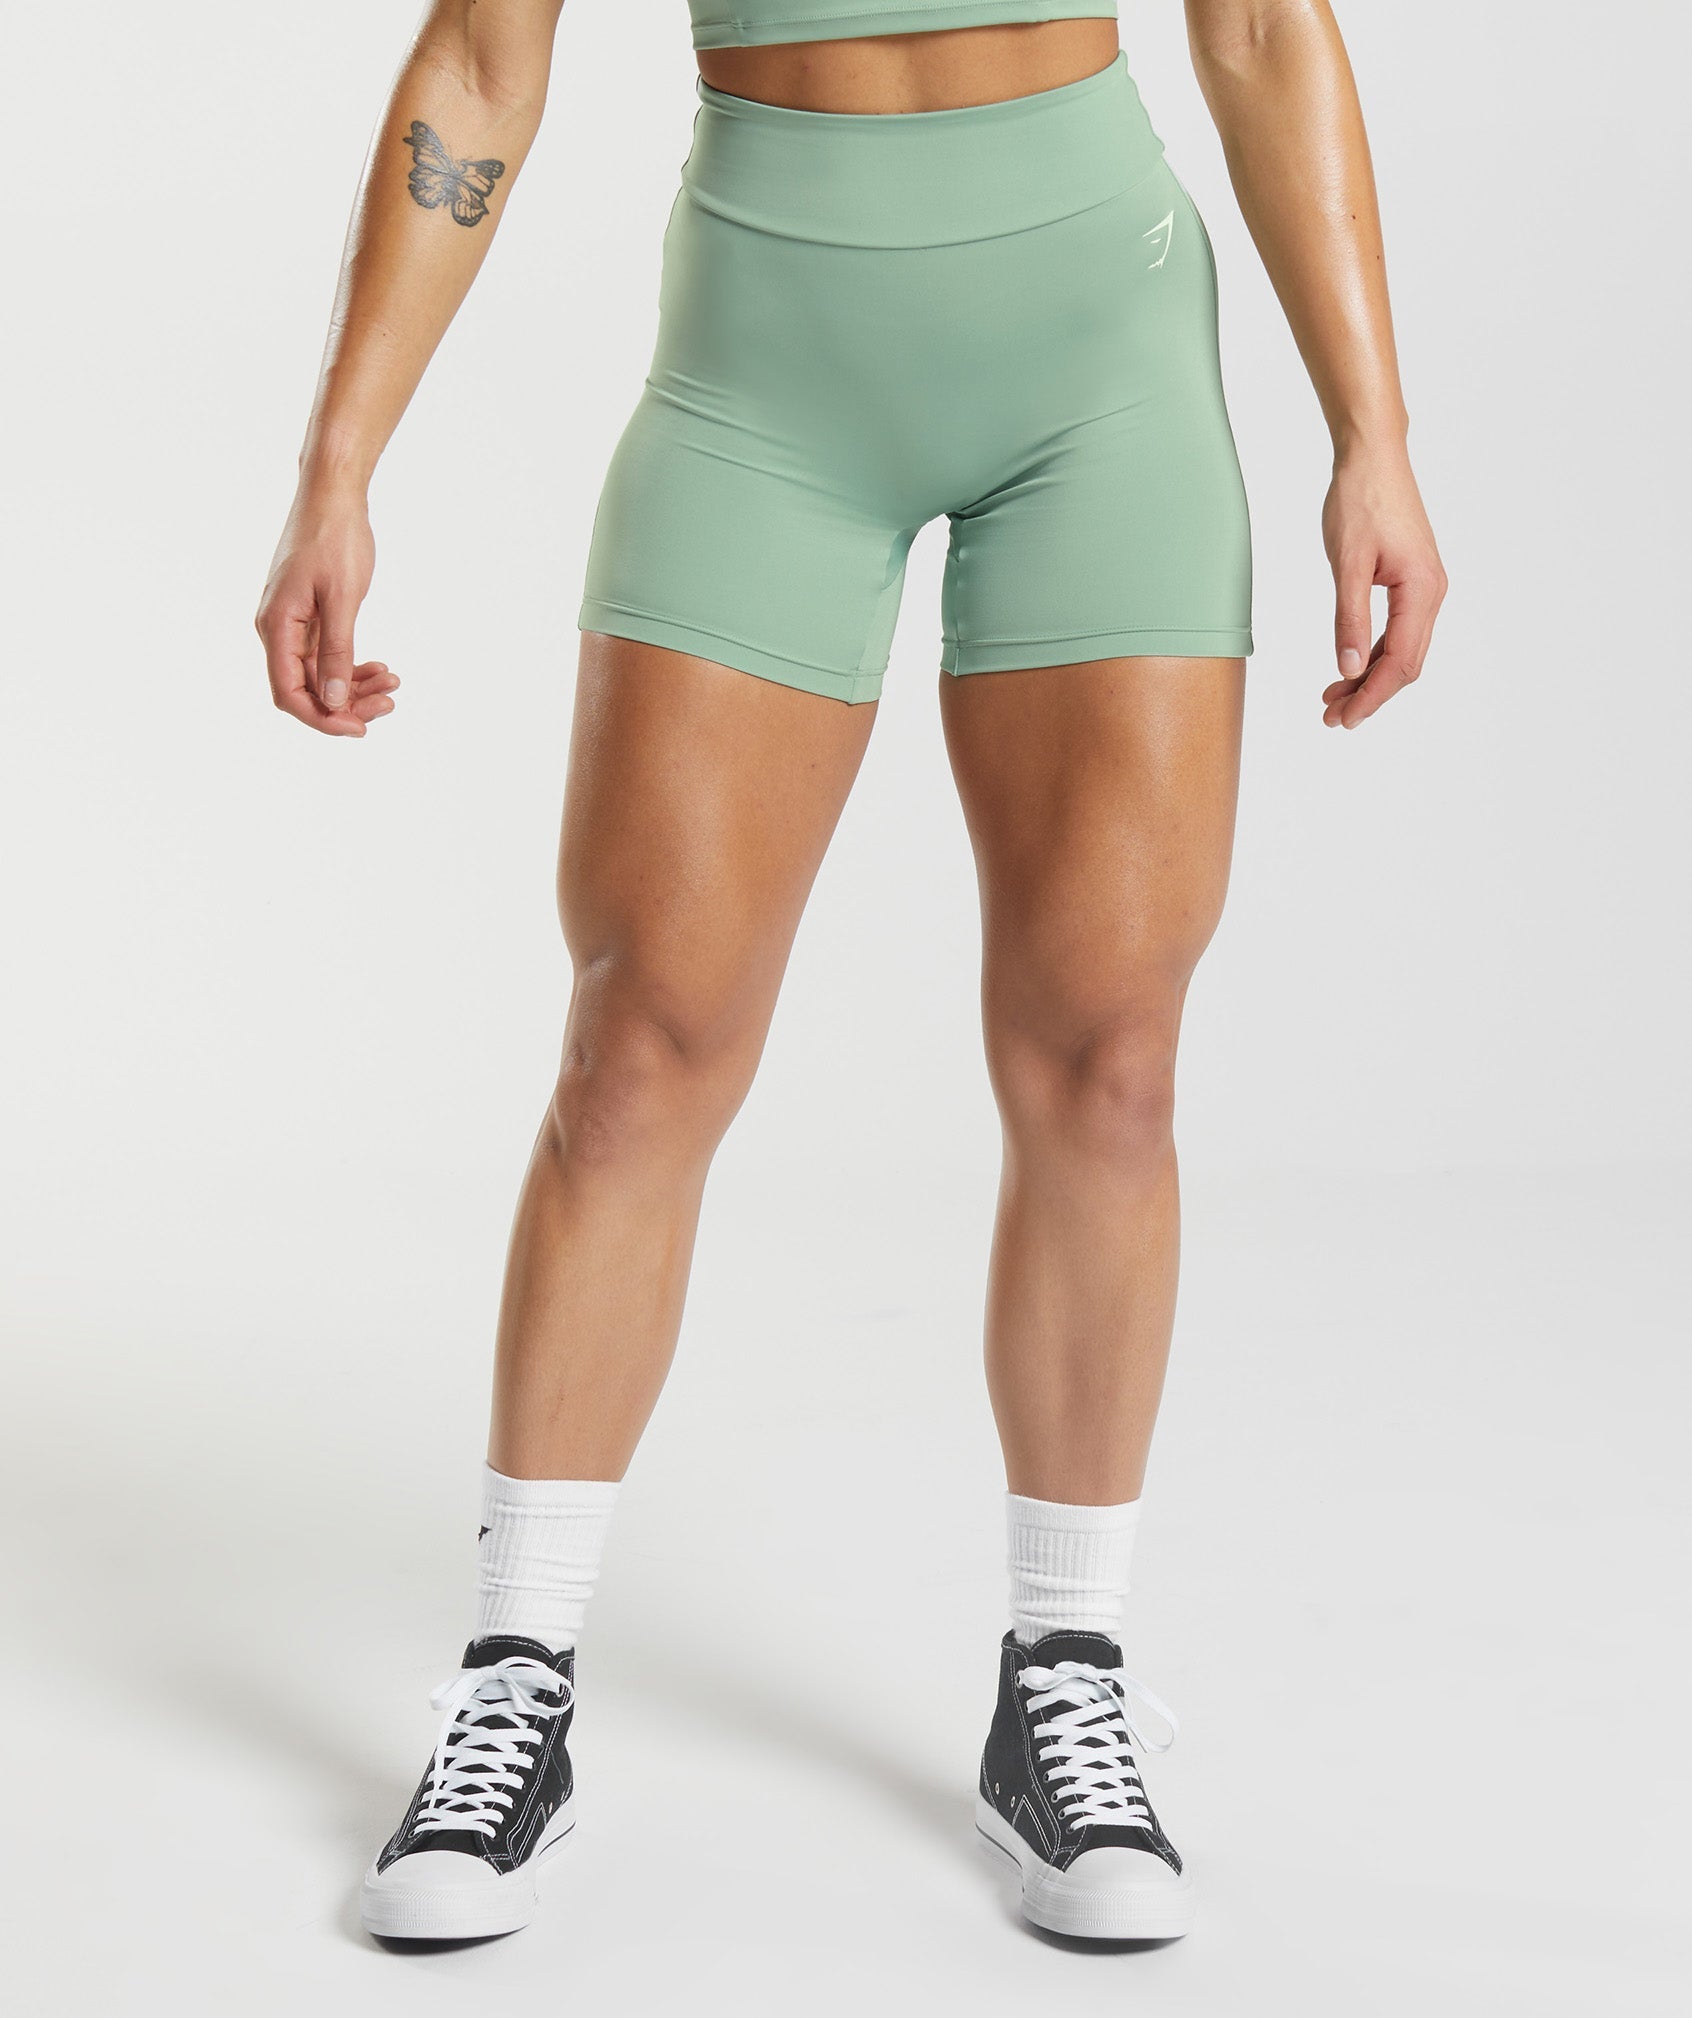 Gymshark Shorts Womens Medium Pink Blue Running Lightweight Gym